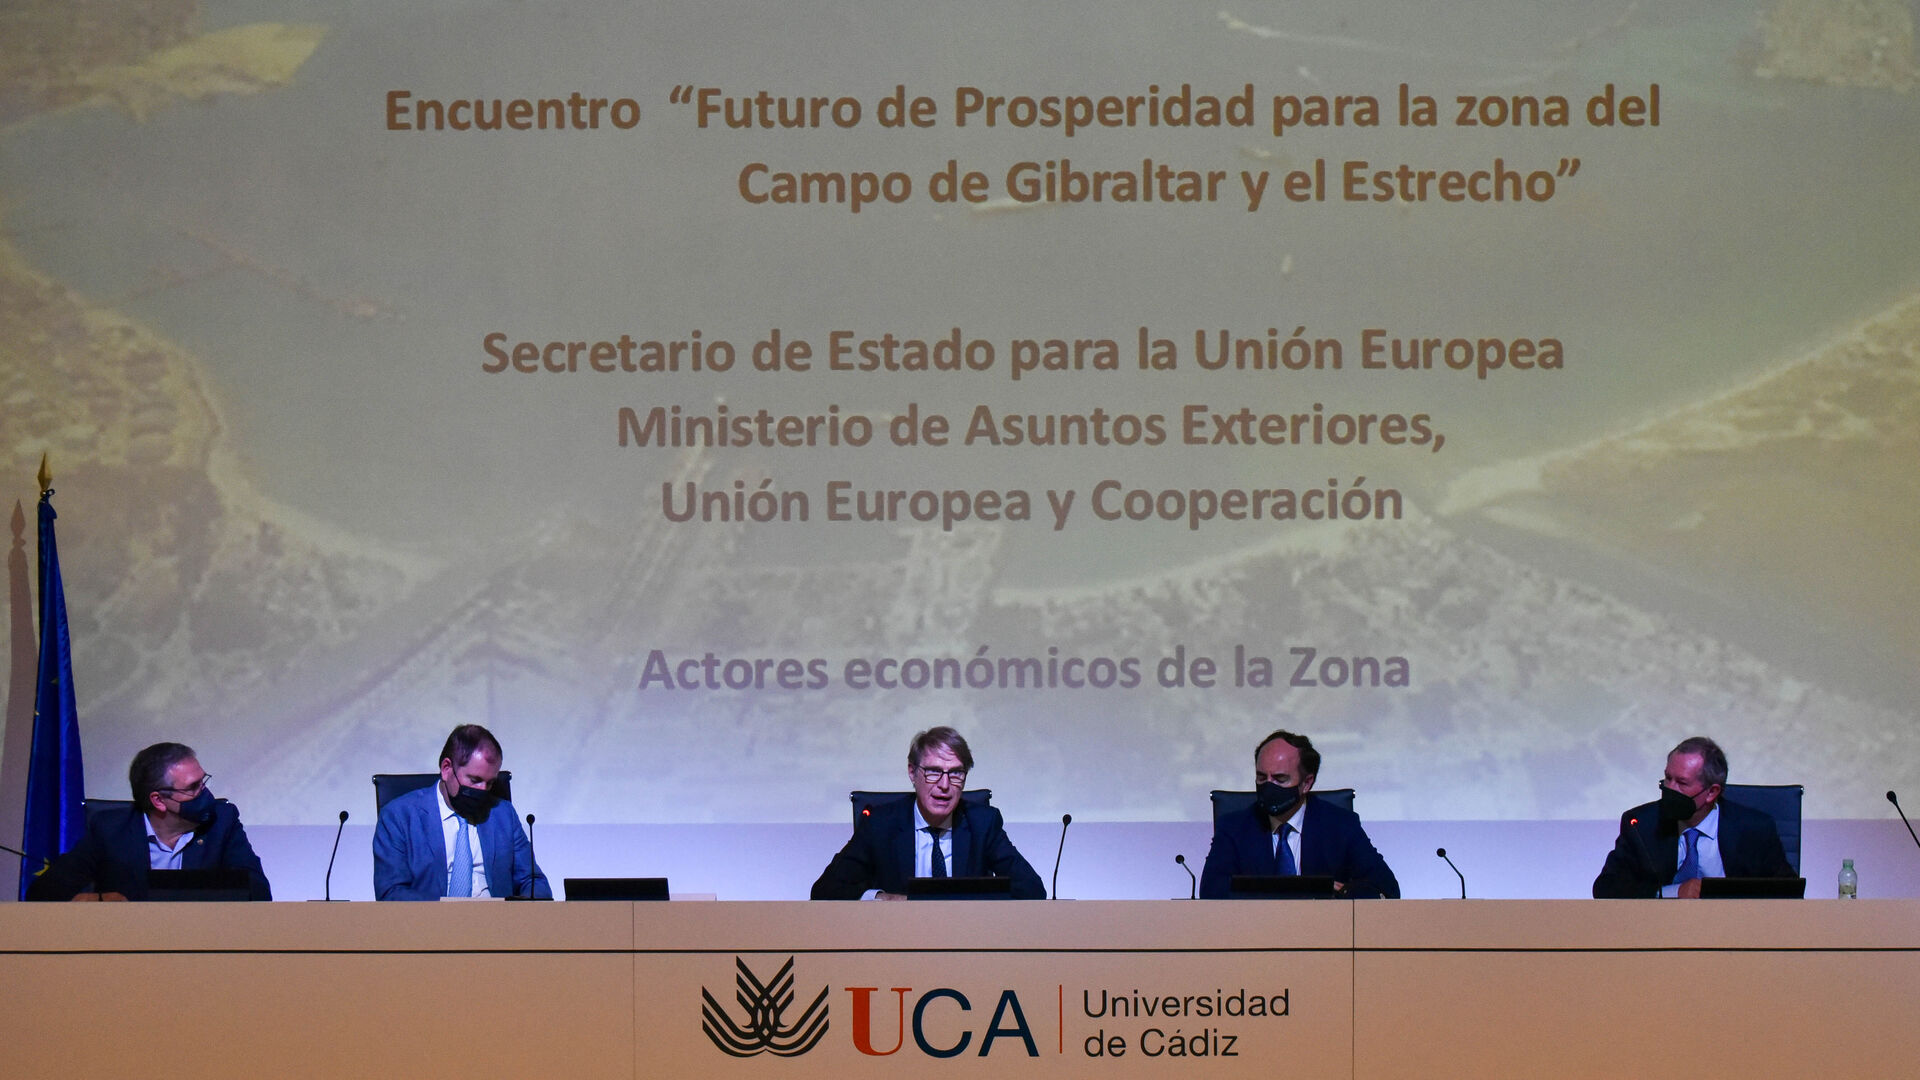 Fotos de la reuni&oacute;n del secretario de estado para la UE y los aalcaldes del Campo de Gibraltar